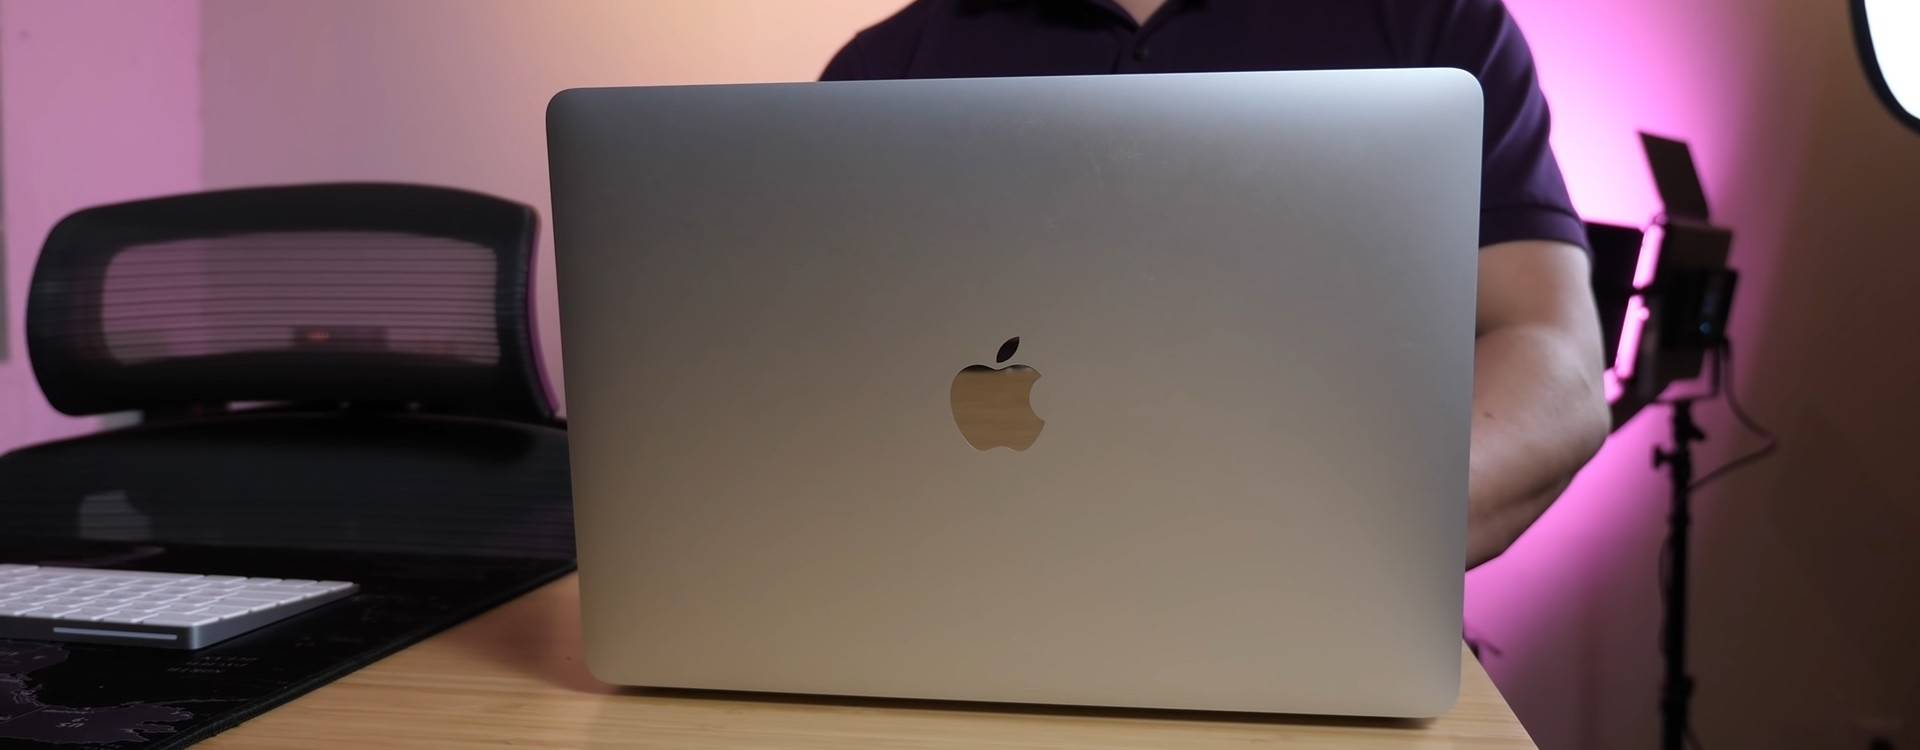 Apple MacBook Air largo